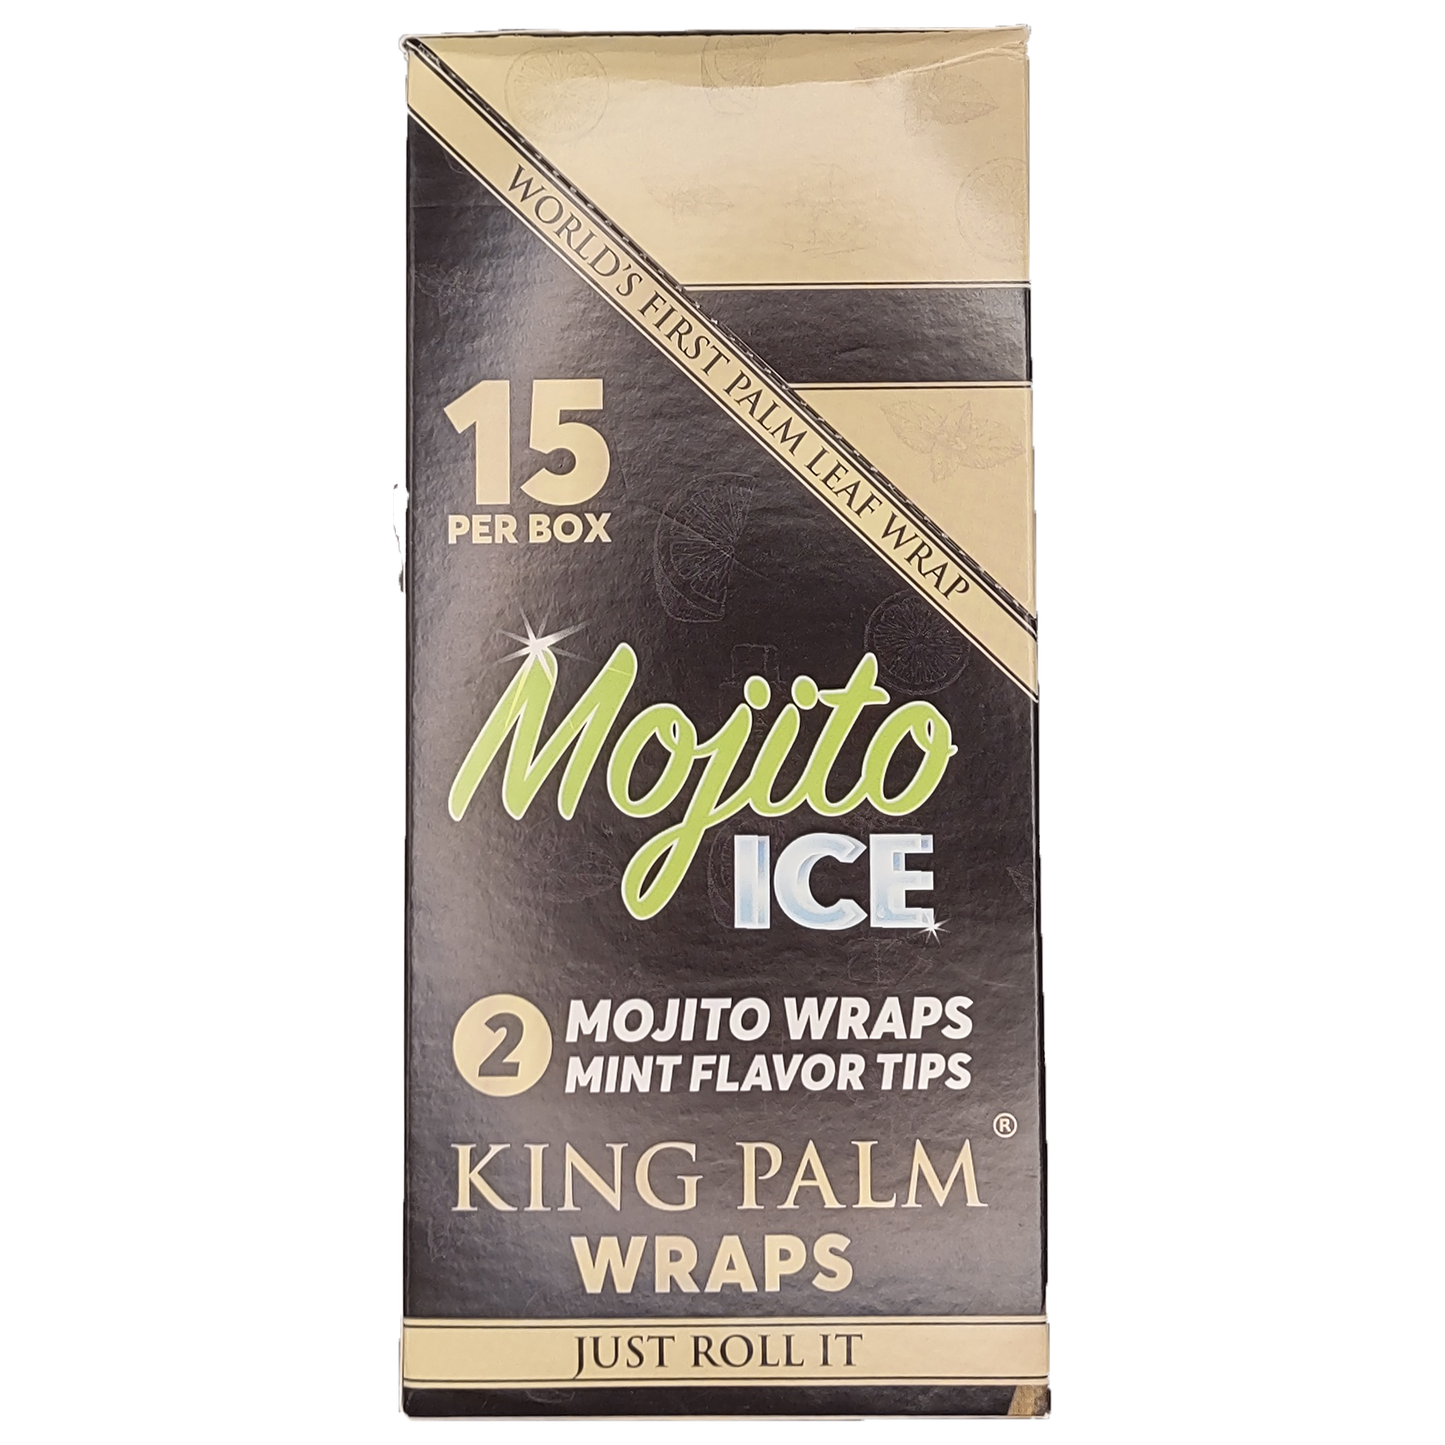 King Palm Wraps - Mojito Ice